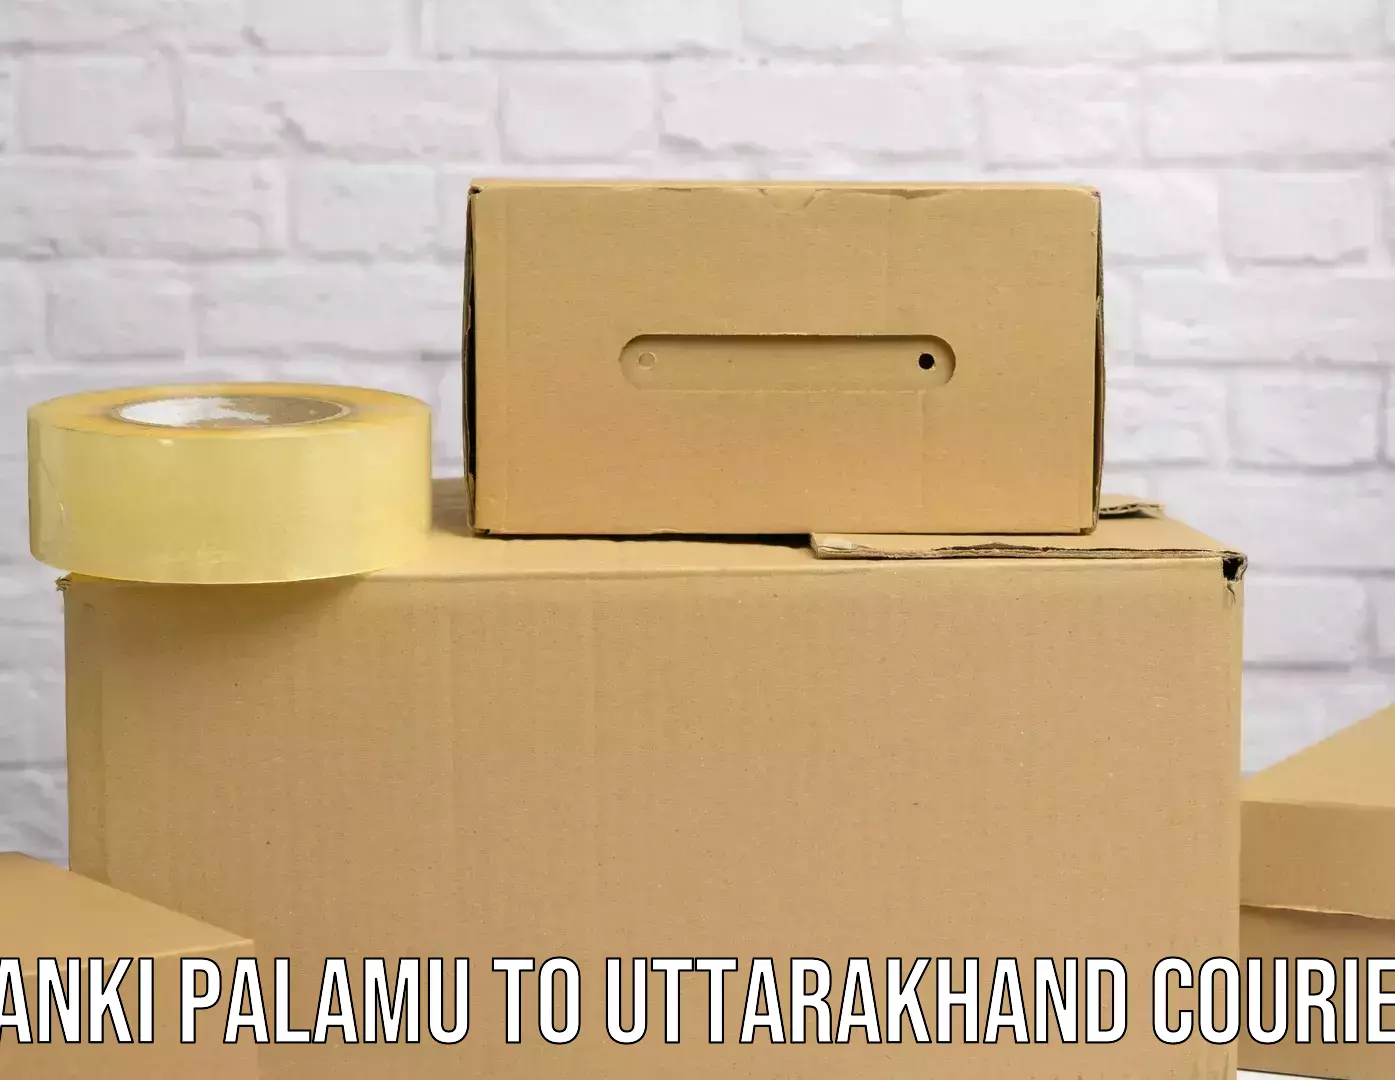 Advanced shipping services Panki Palamu to Uttarakhand